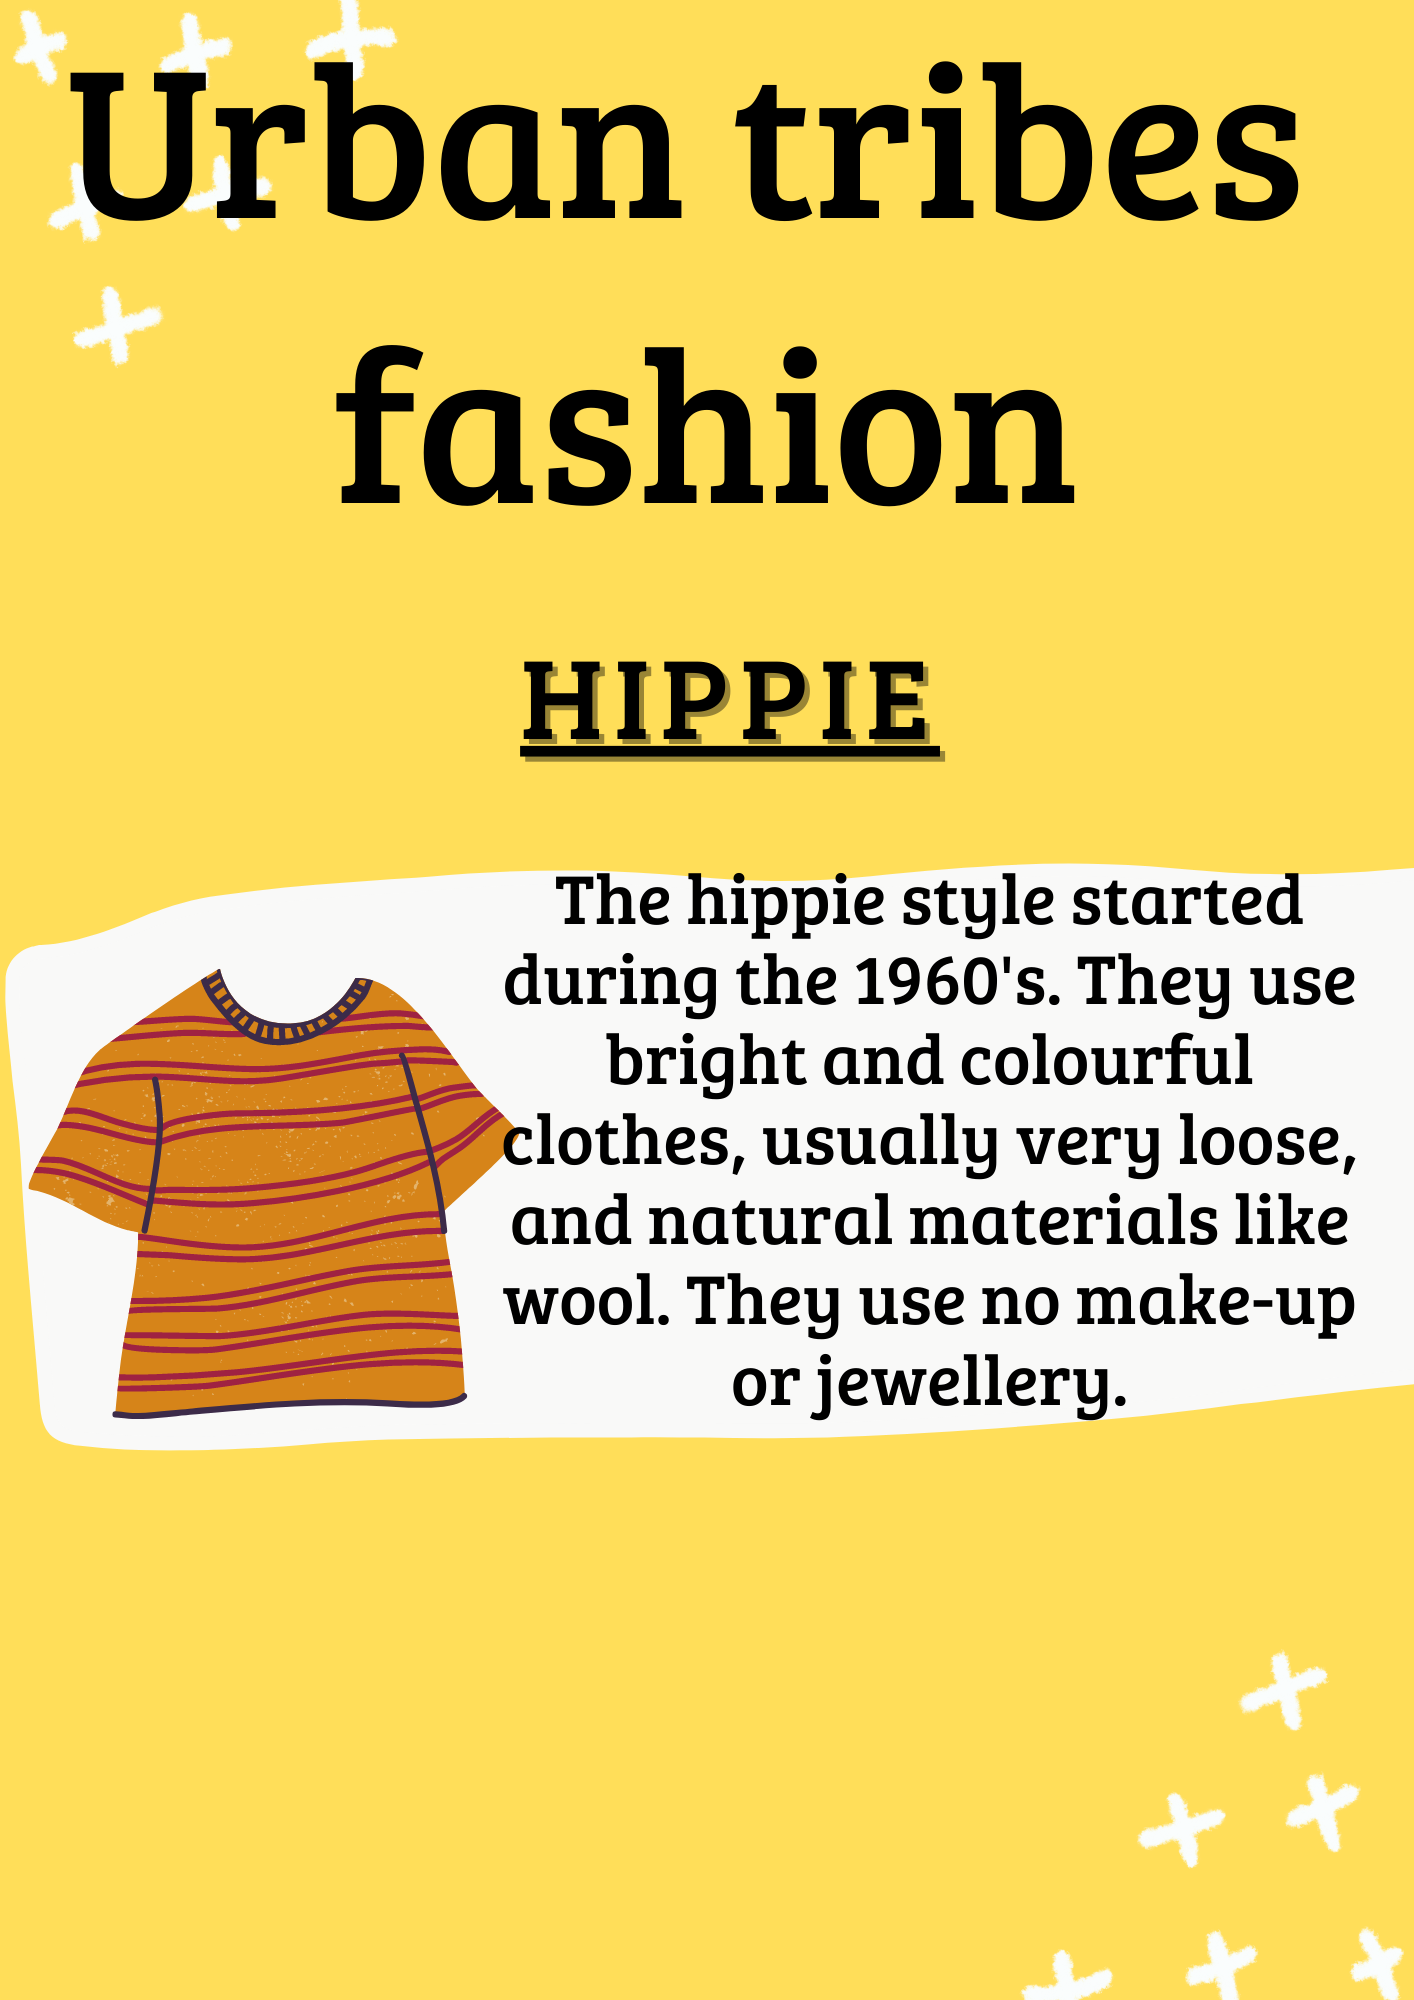 La imagen tiene fondo amarillo y letra en negro. El título de la imagen es Urban tribes fashion y debajo el subtítulo “hippie”. Aparece una breve descripción a la derecha y a la izquierda la imagen de una camiseta de rayas horizontales en tonos anaranjados.